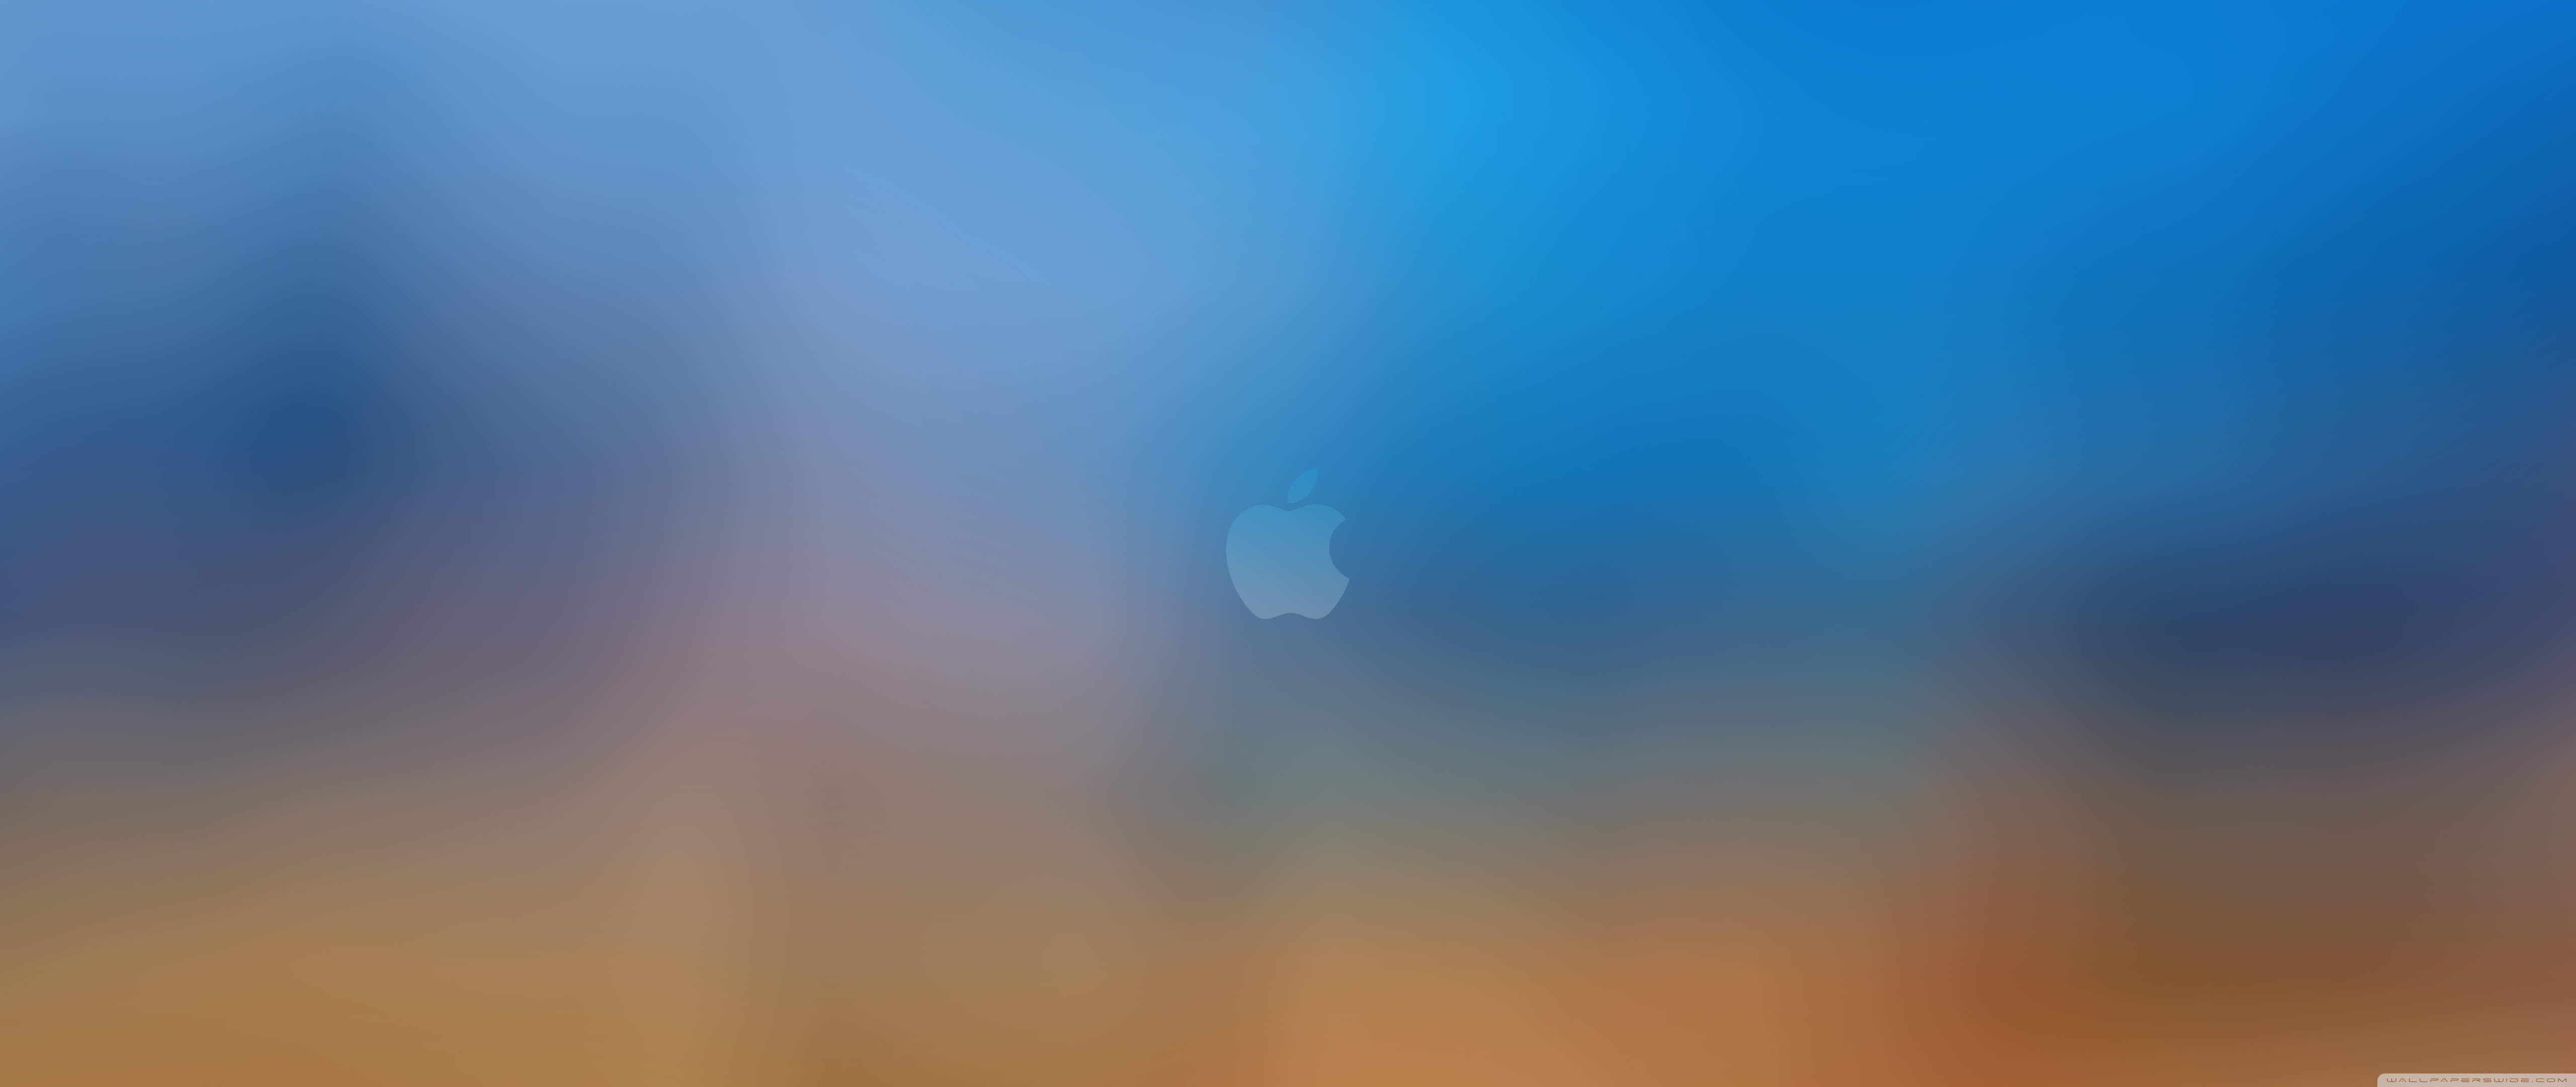 Ultrawide - Apple 3440 X 1440 , HD Wallpaper & Backgrounds